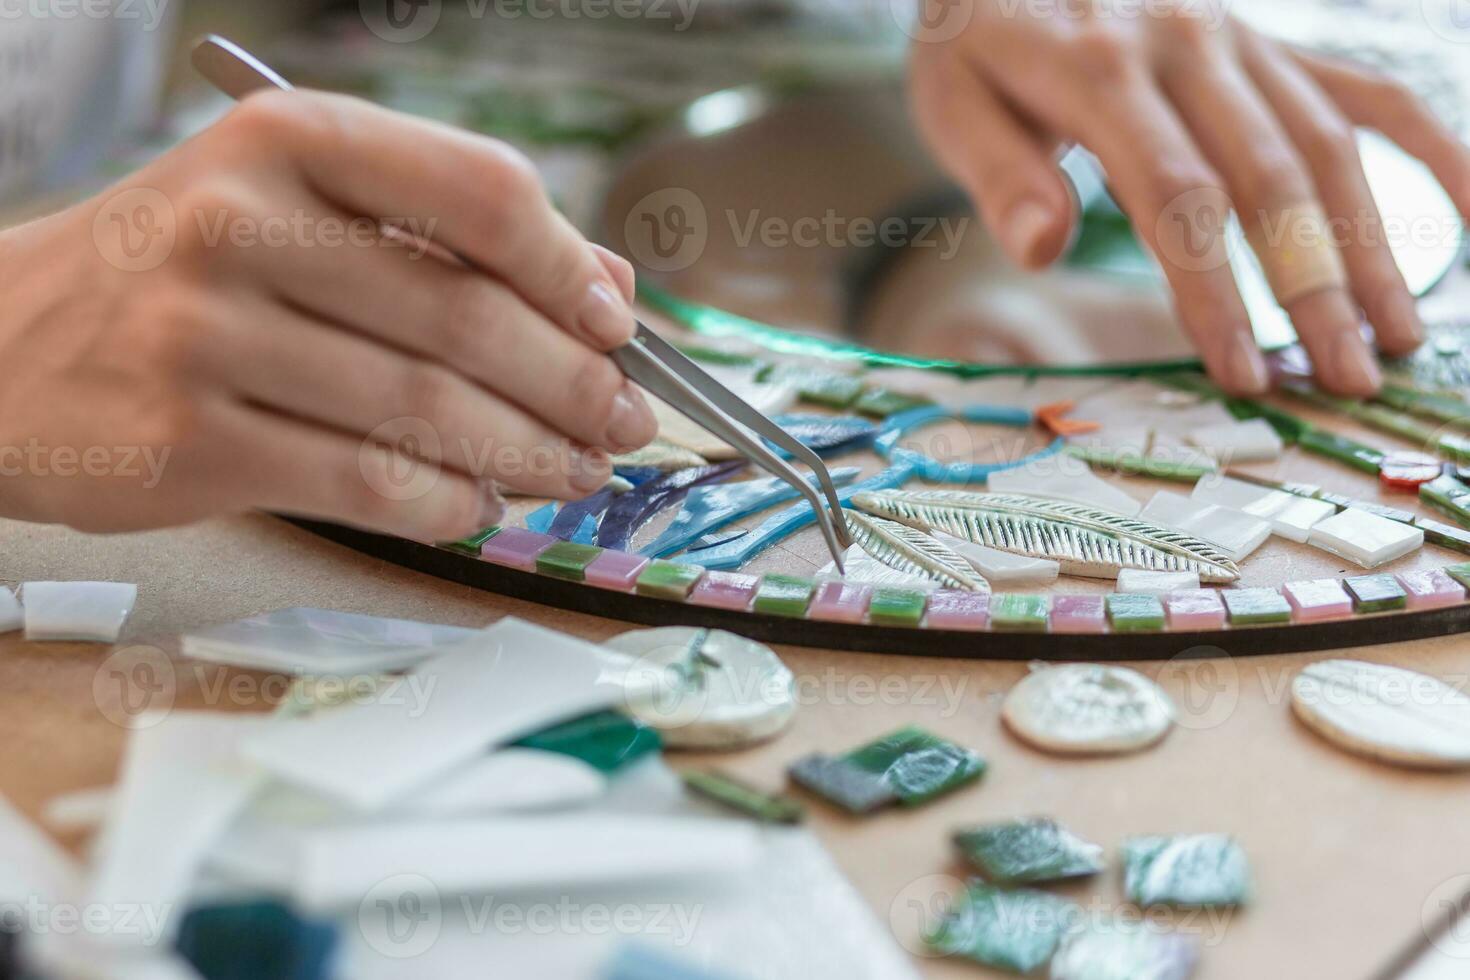 werkplaats van de mozaïek- meester vrouwen handen Holding gereedschap voor mozaïek- details in de werkwijze van maken een mozaïek- foto